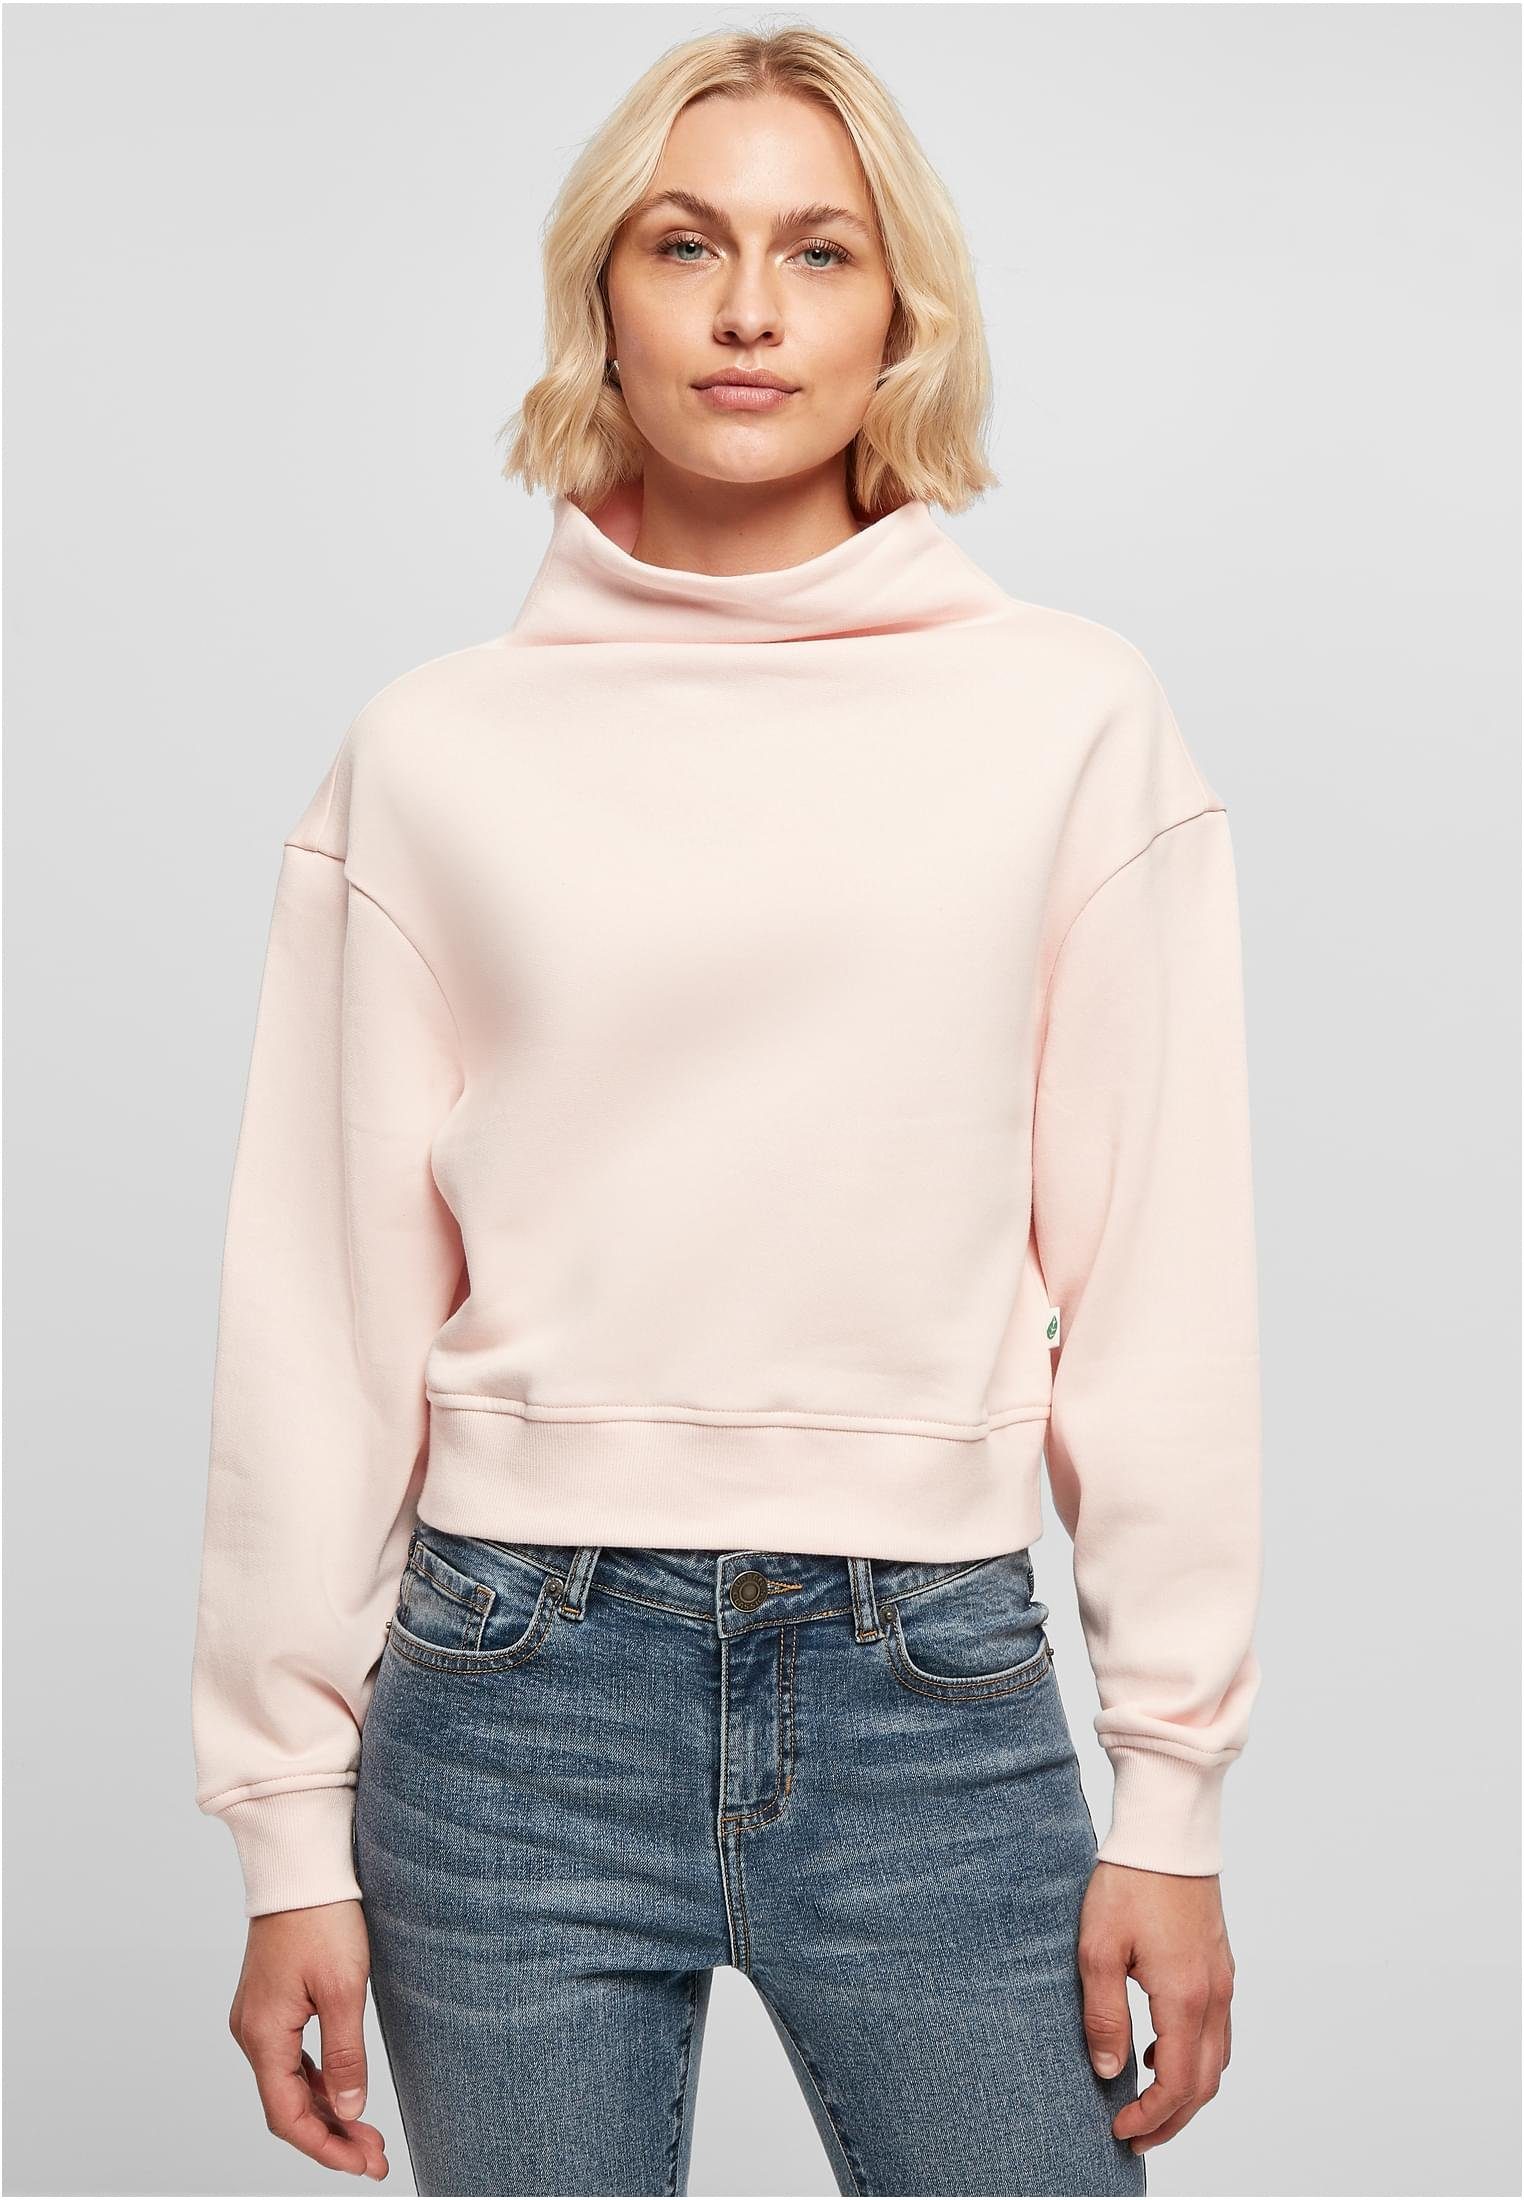 begrenzte Zeit verfügbar URBAN CLASSICS Sweater pink High Short Ladies Organic (1-tlg) Damen Crew Neck